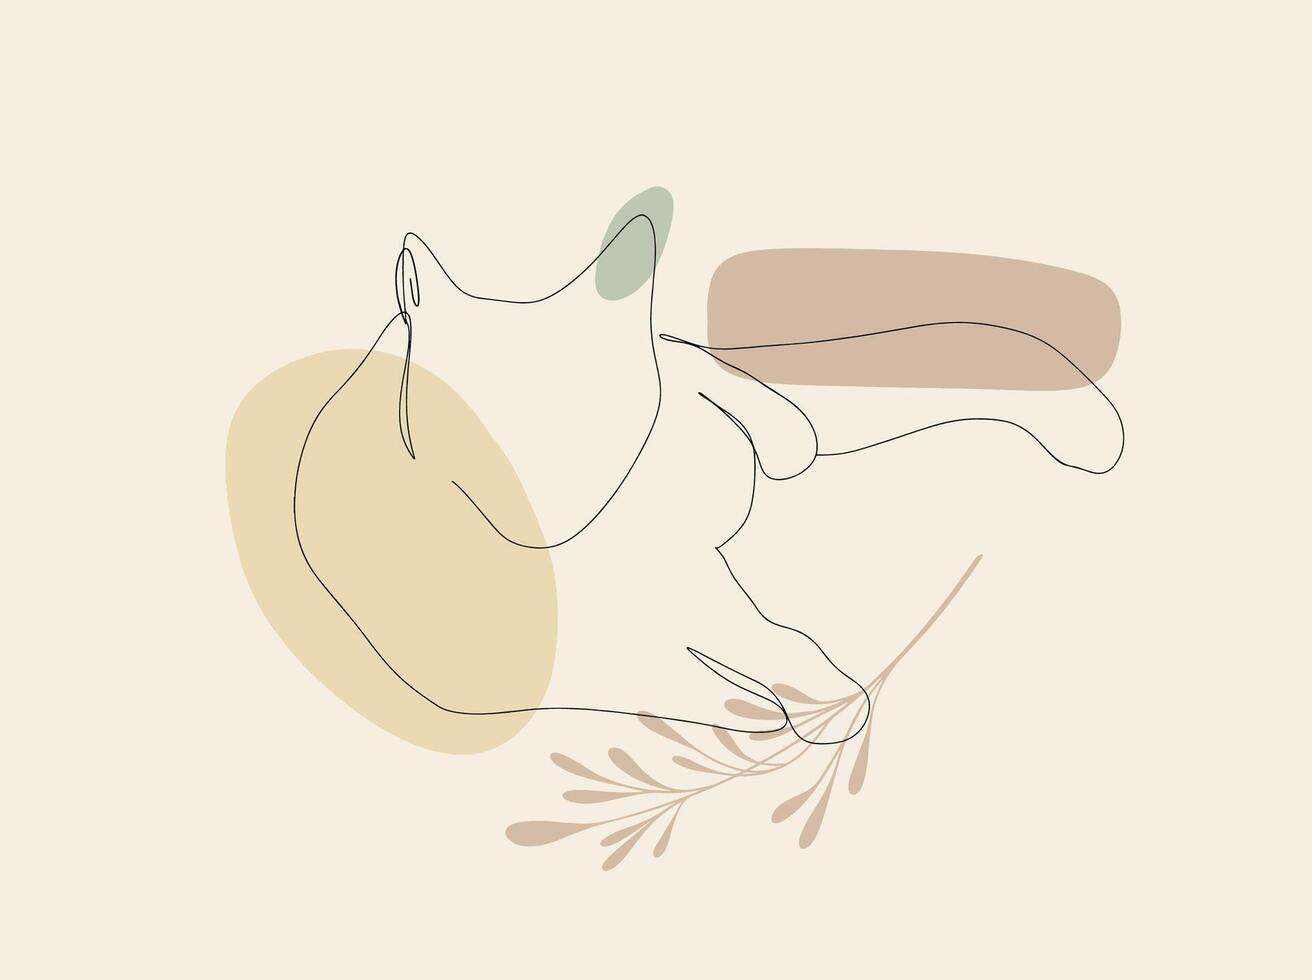 uno linea dire bugie gatto vettore illustrazione con astratto forme e pianta ramo, le foglie beige colori